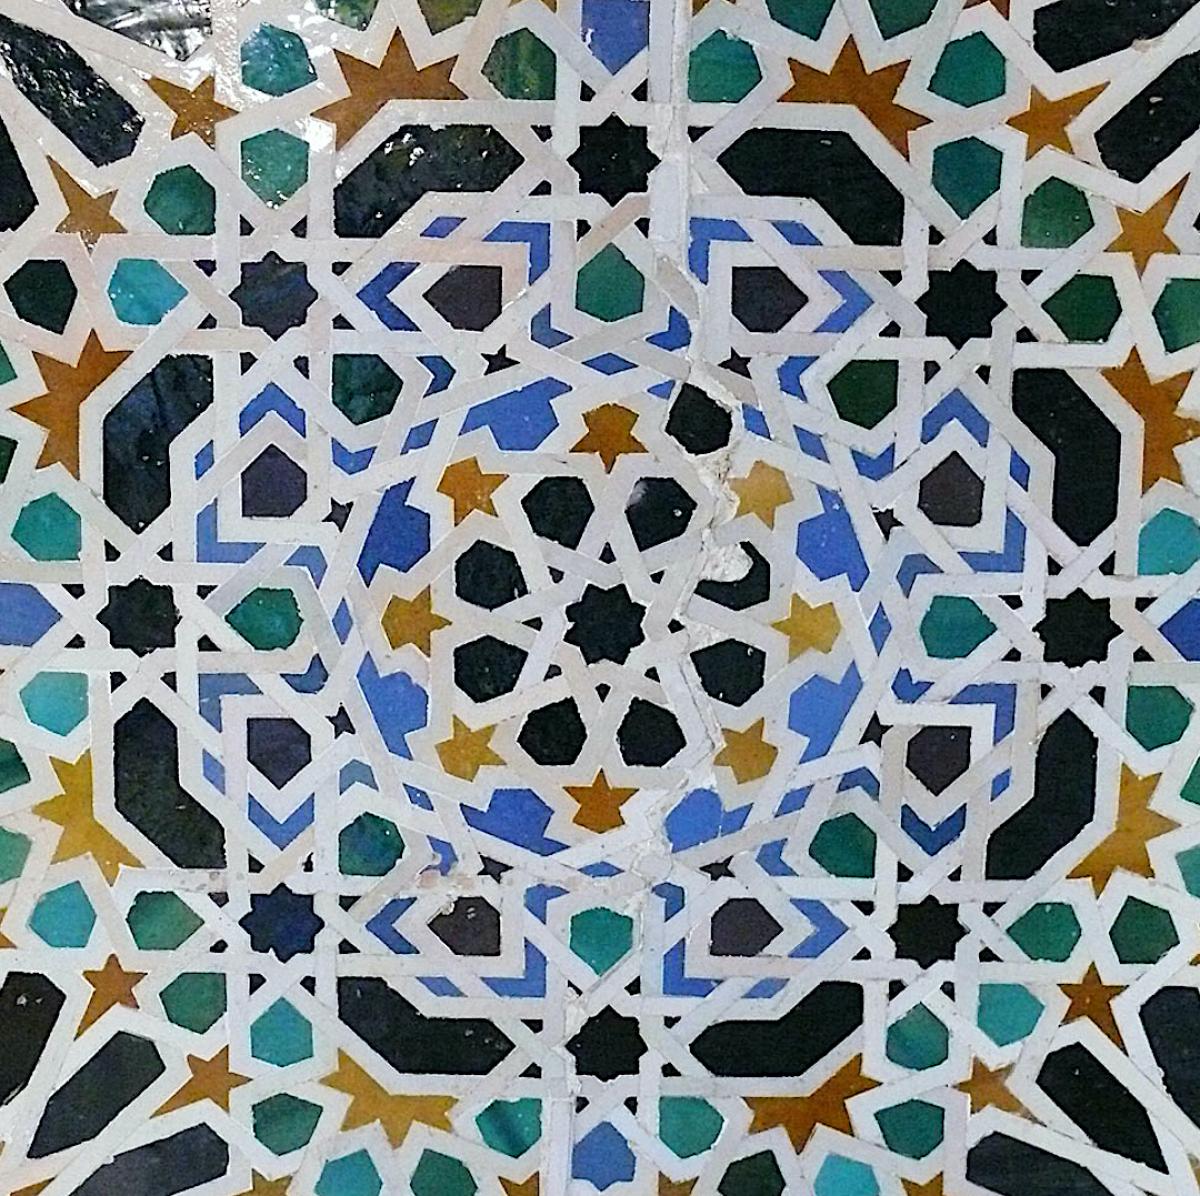 Alicatado de la Alhambra